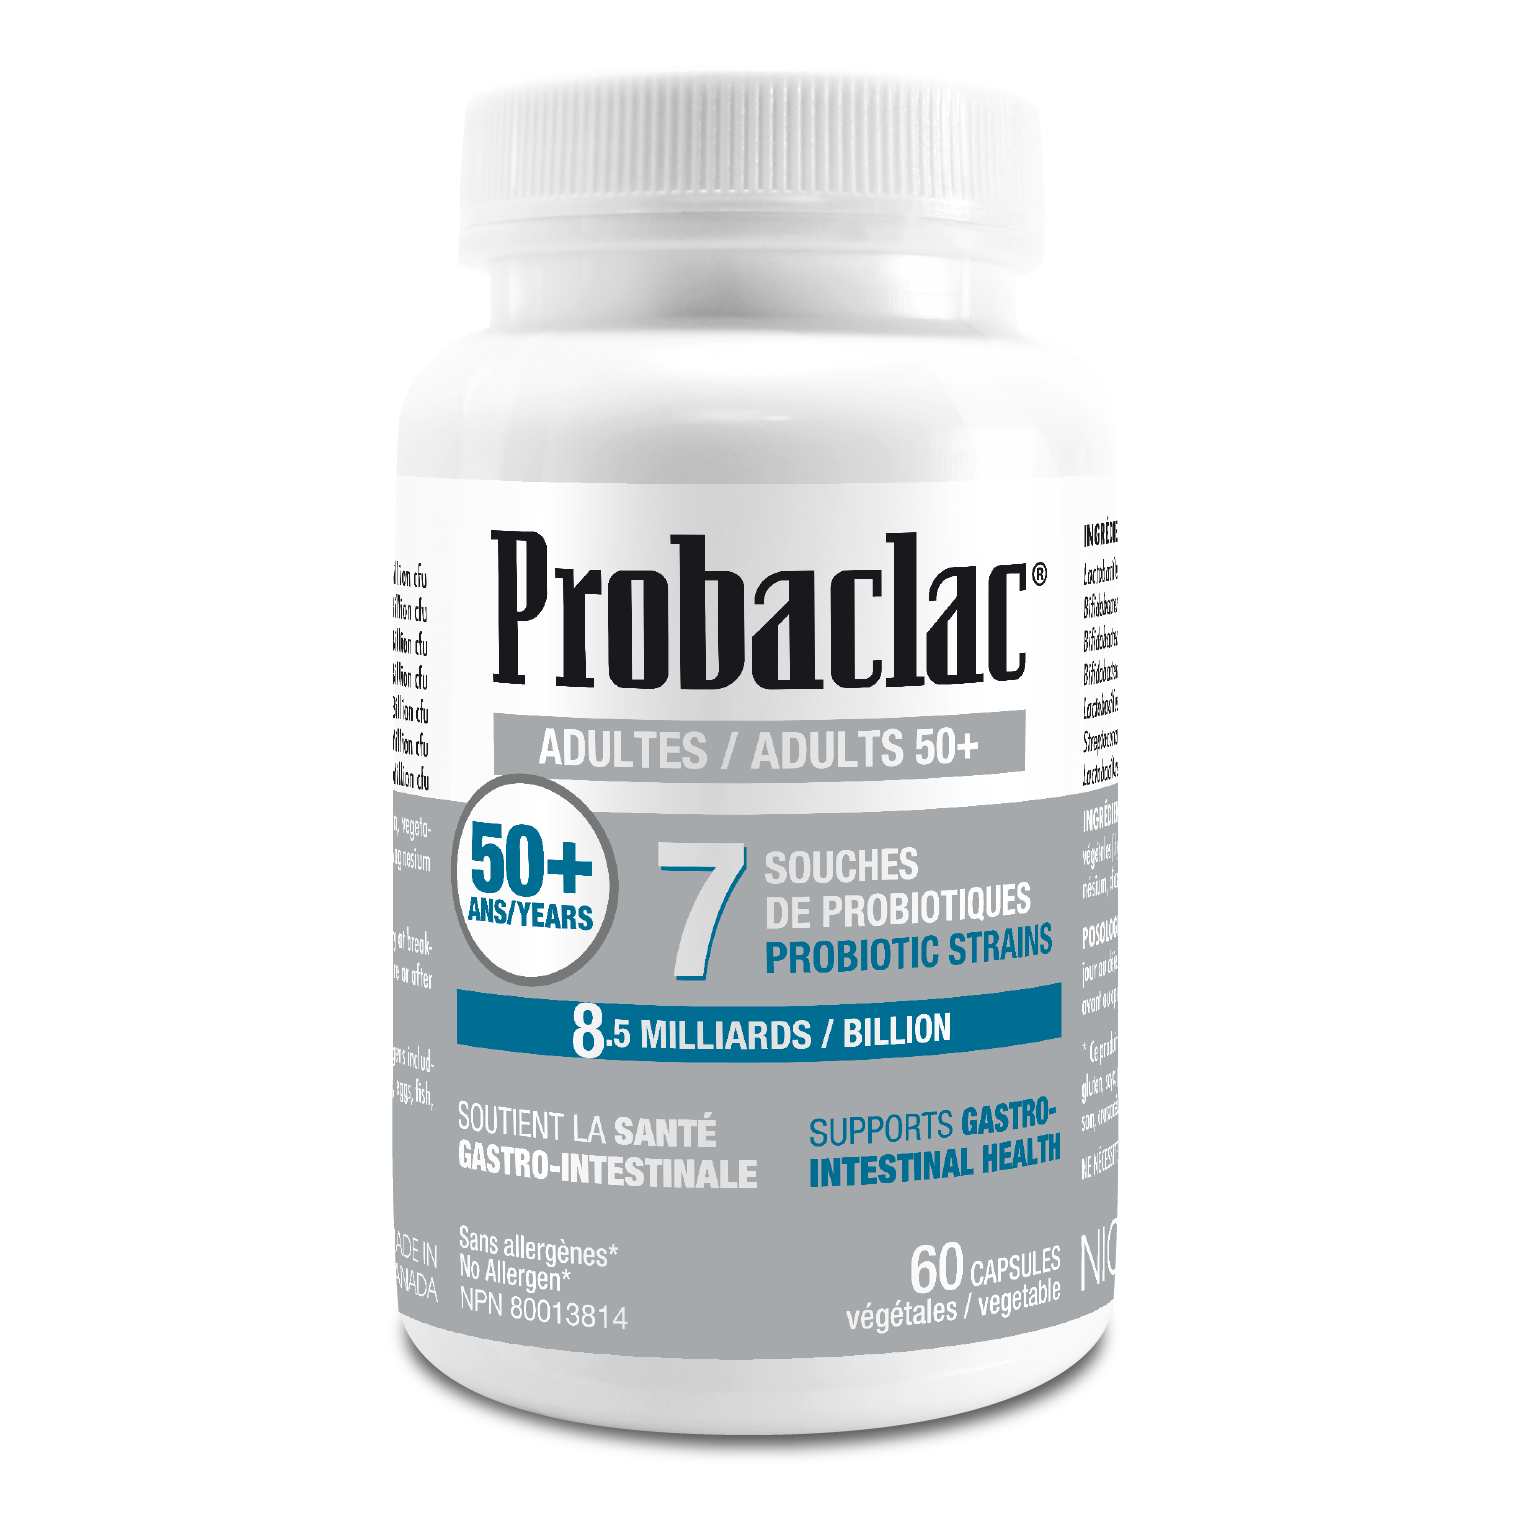 Probiotique Formule 50 ans et + MultiSouches  Probaclac